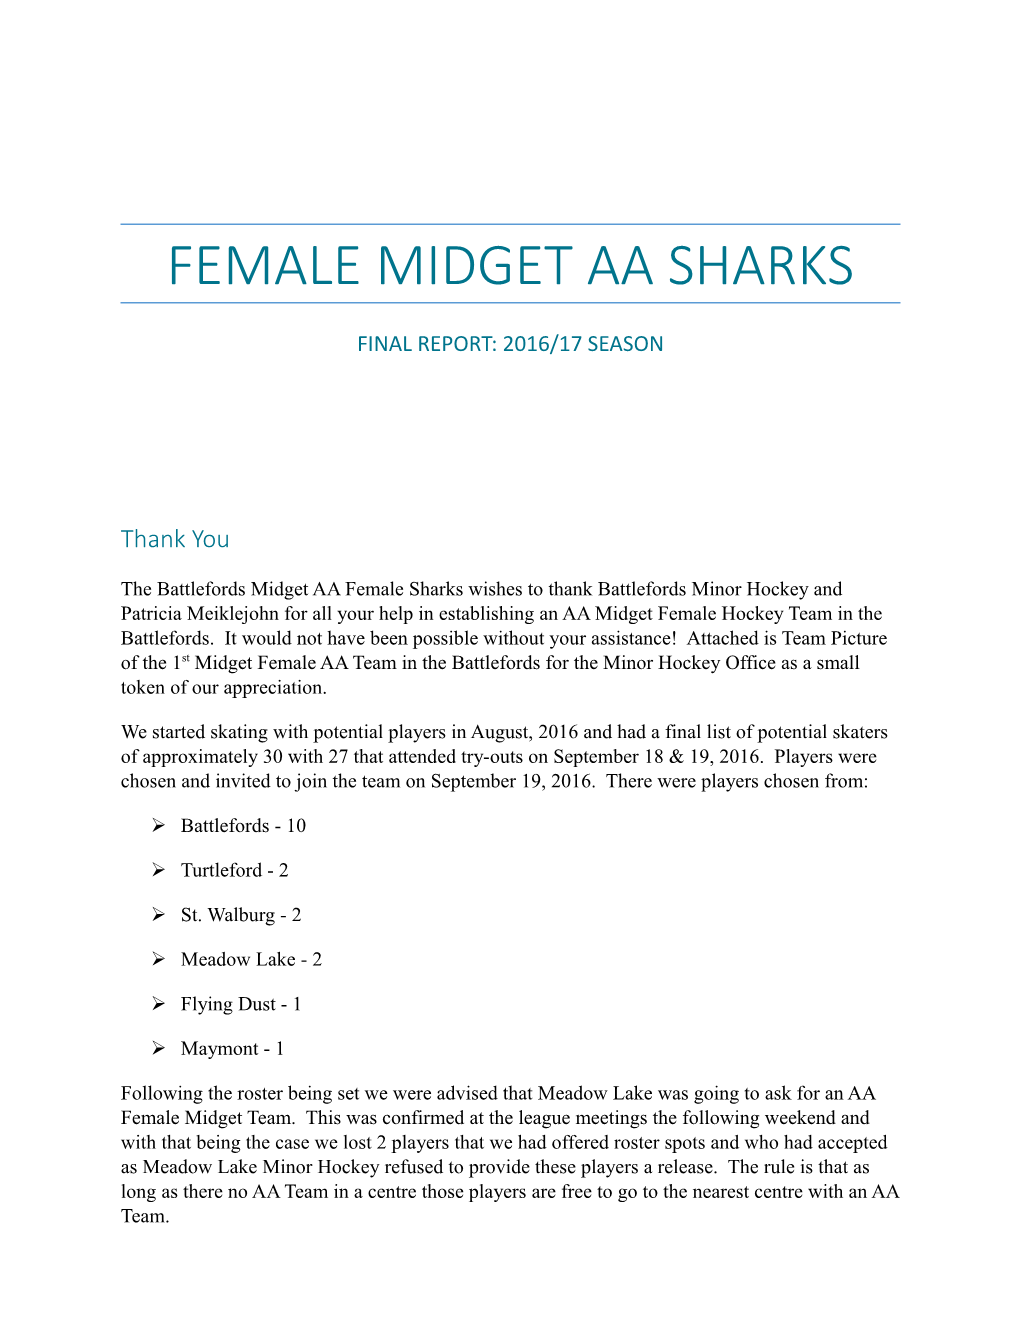 Female Midget AA Sharks